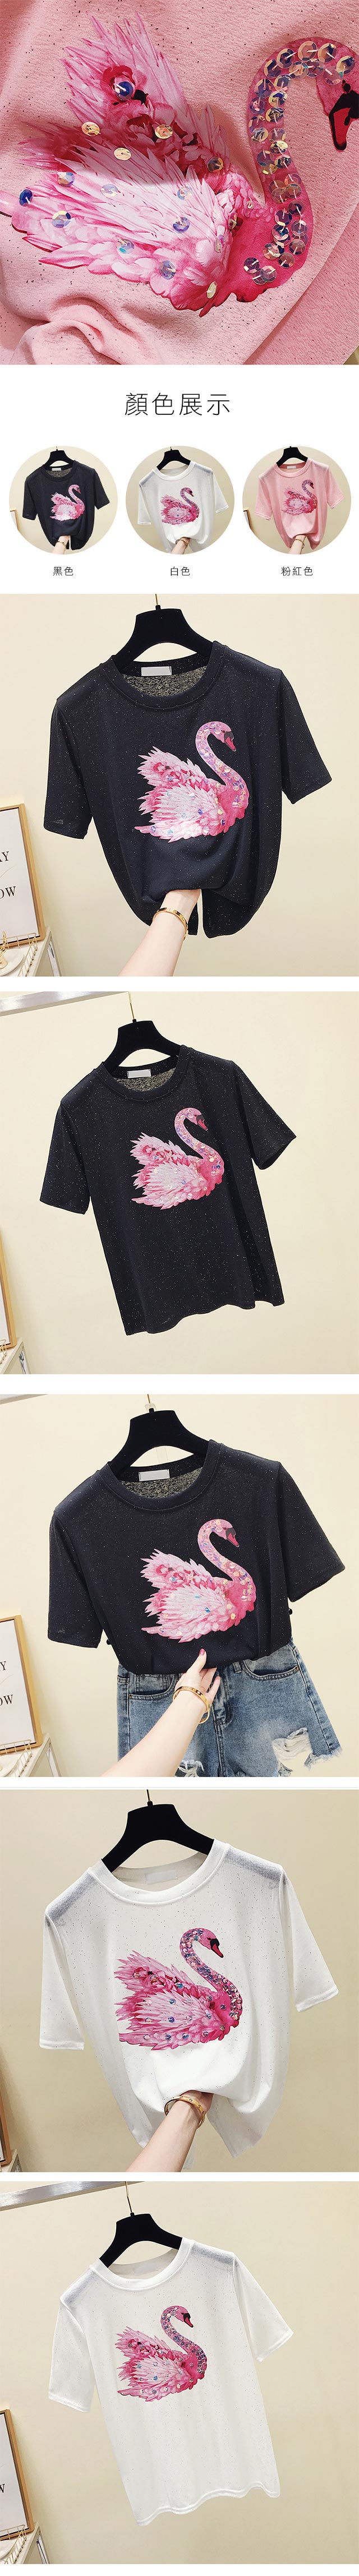 初色天鵝亮片印花短袖T恤-共3色-(M-XL可選)